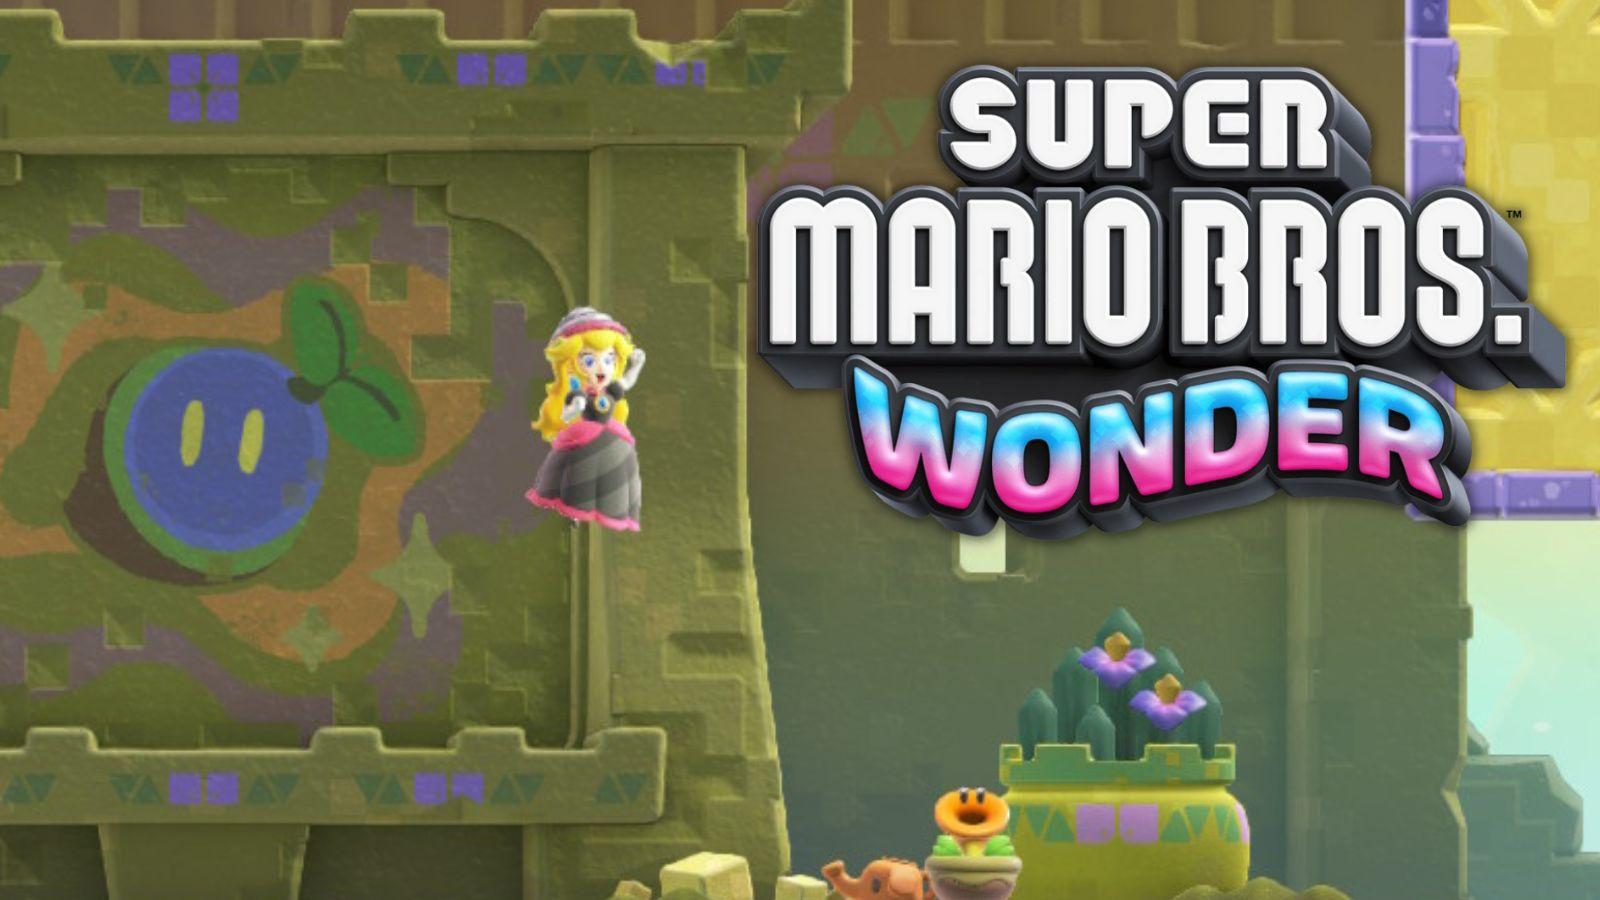 All Search Party Park Token Locations - Super Mario Bros. Wonder